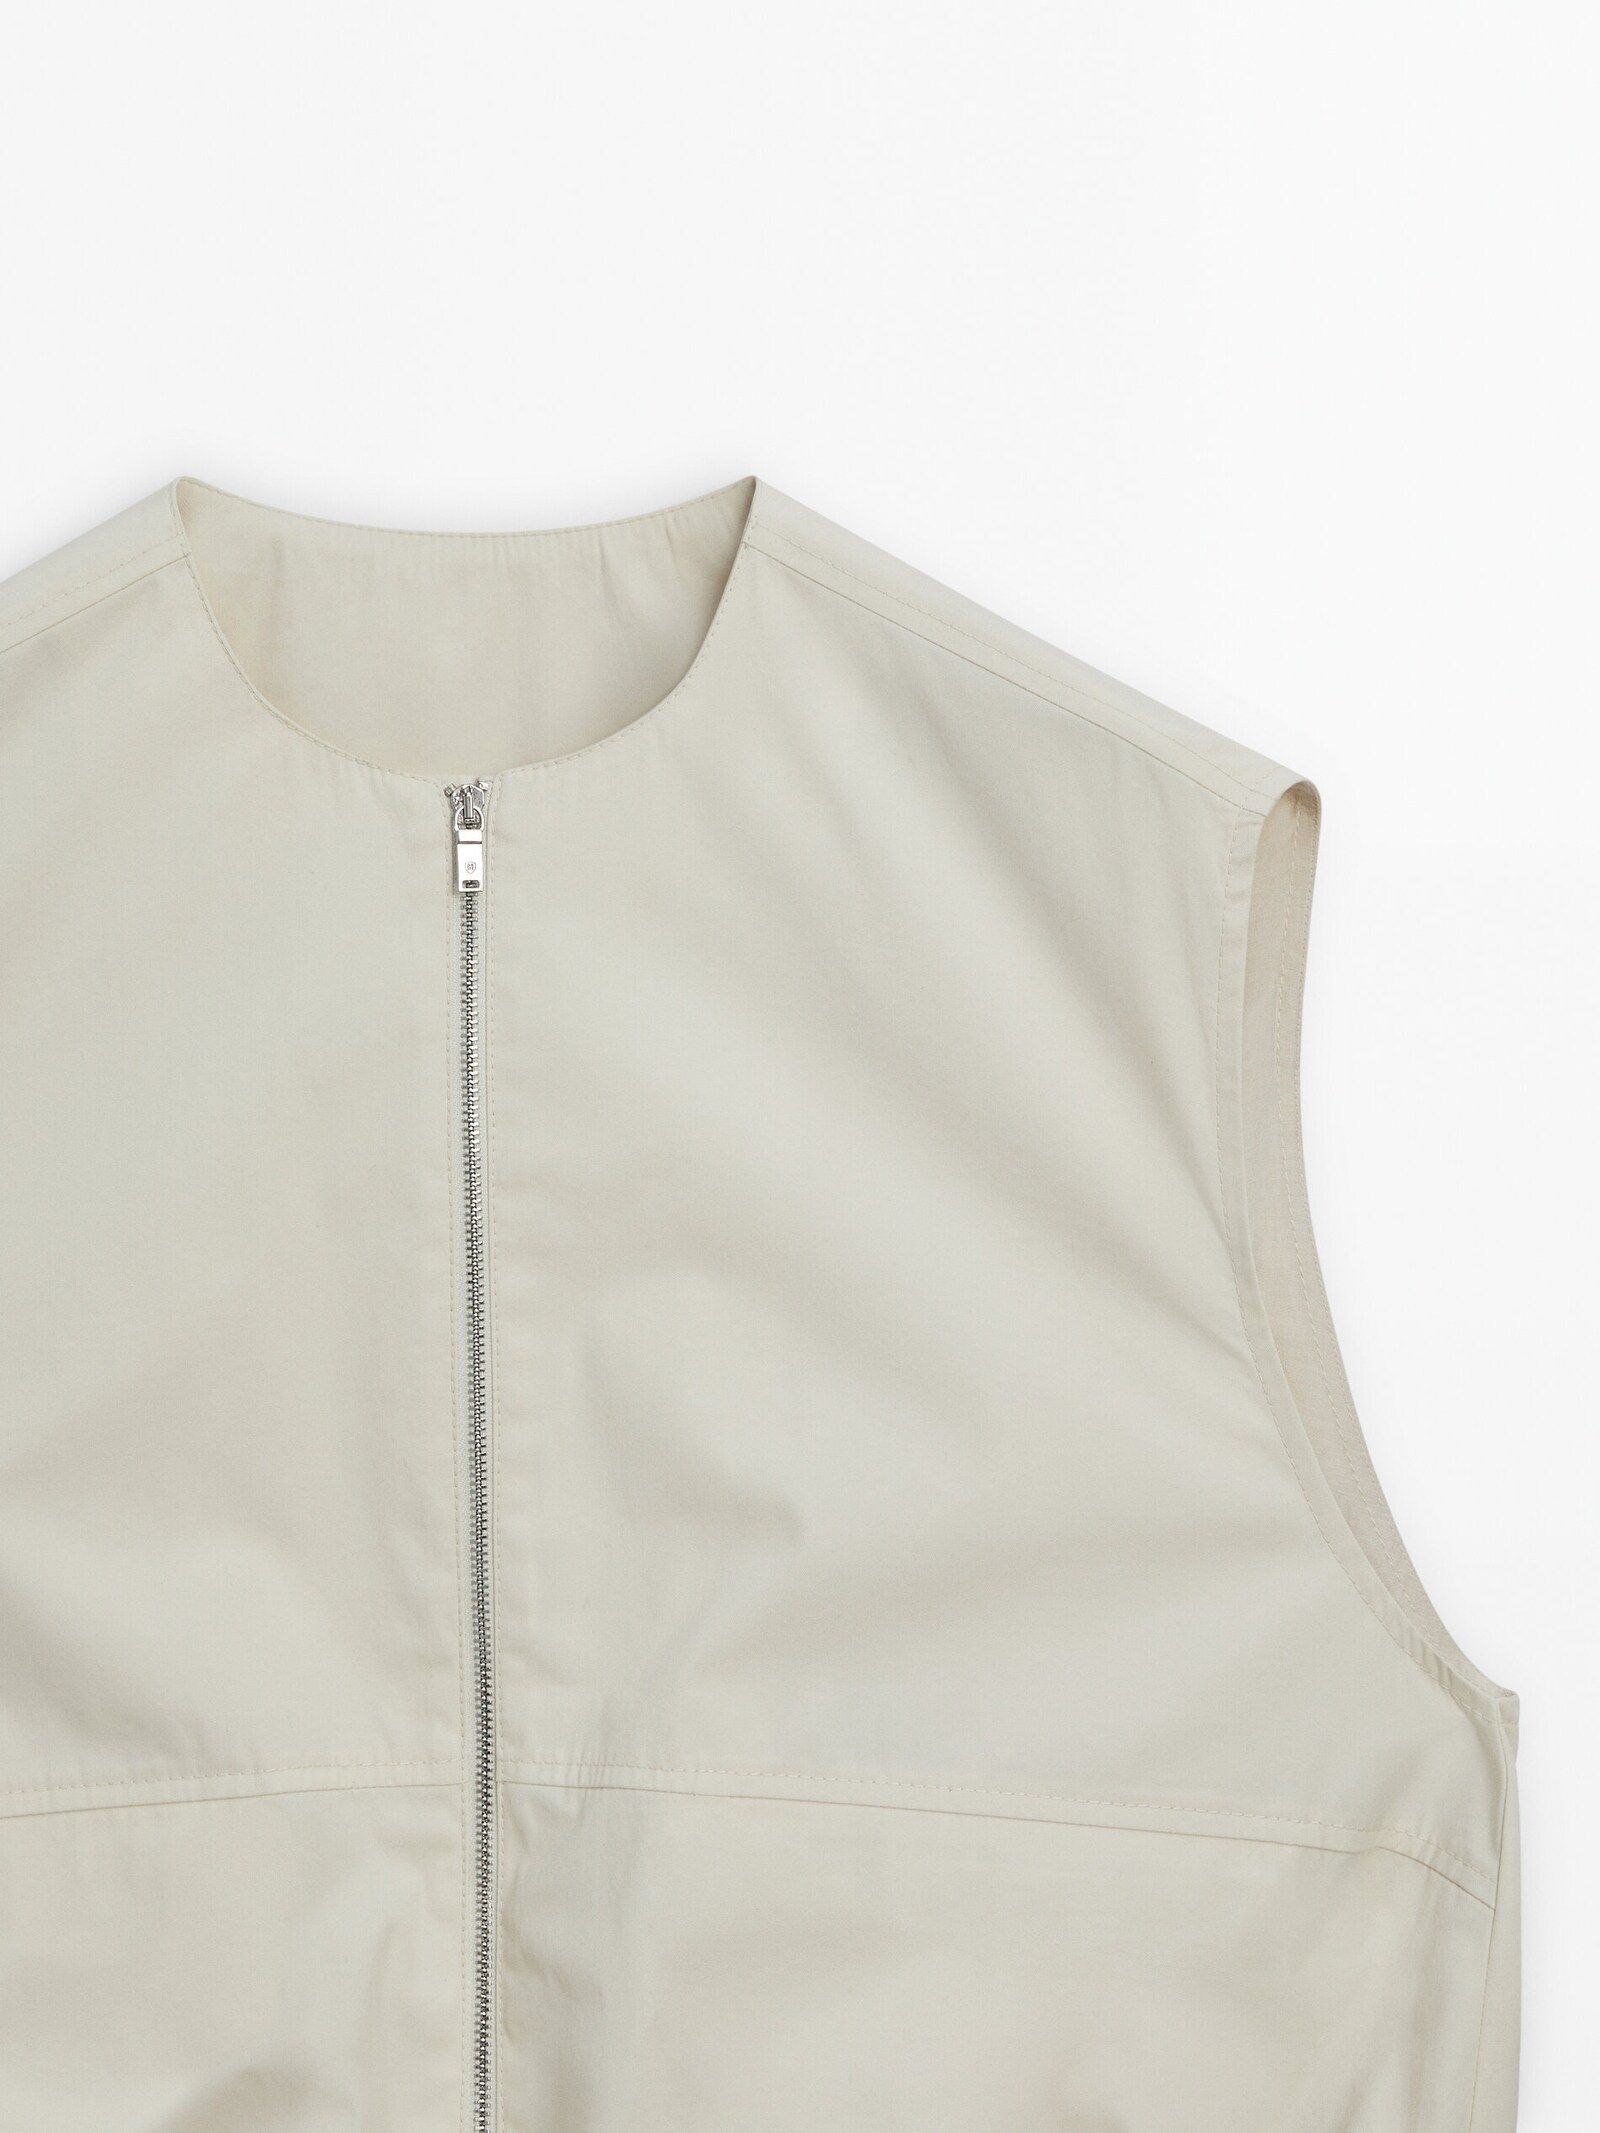 Utility vest with pockets | Massimo Dutti UK